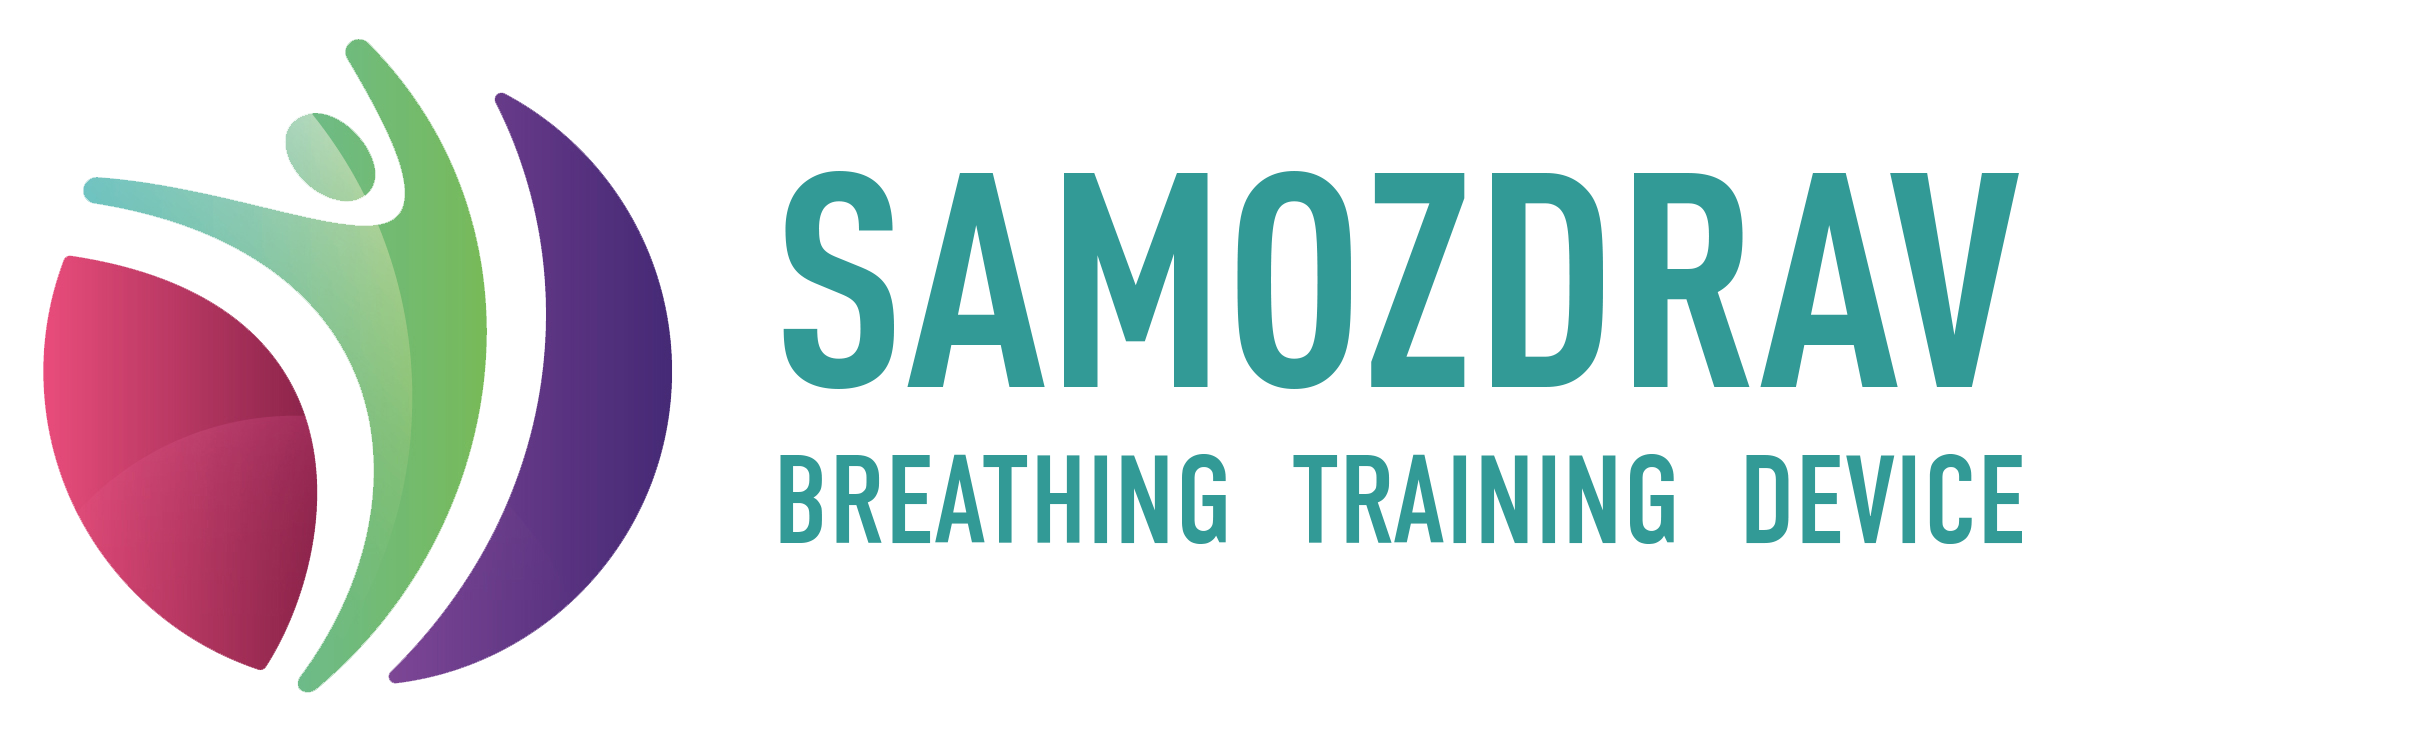 Samozdrav – breathing training device